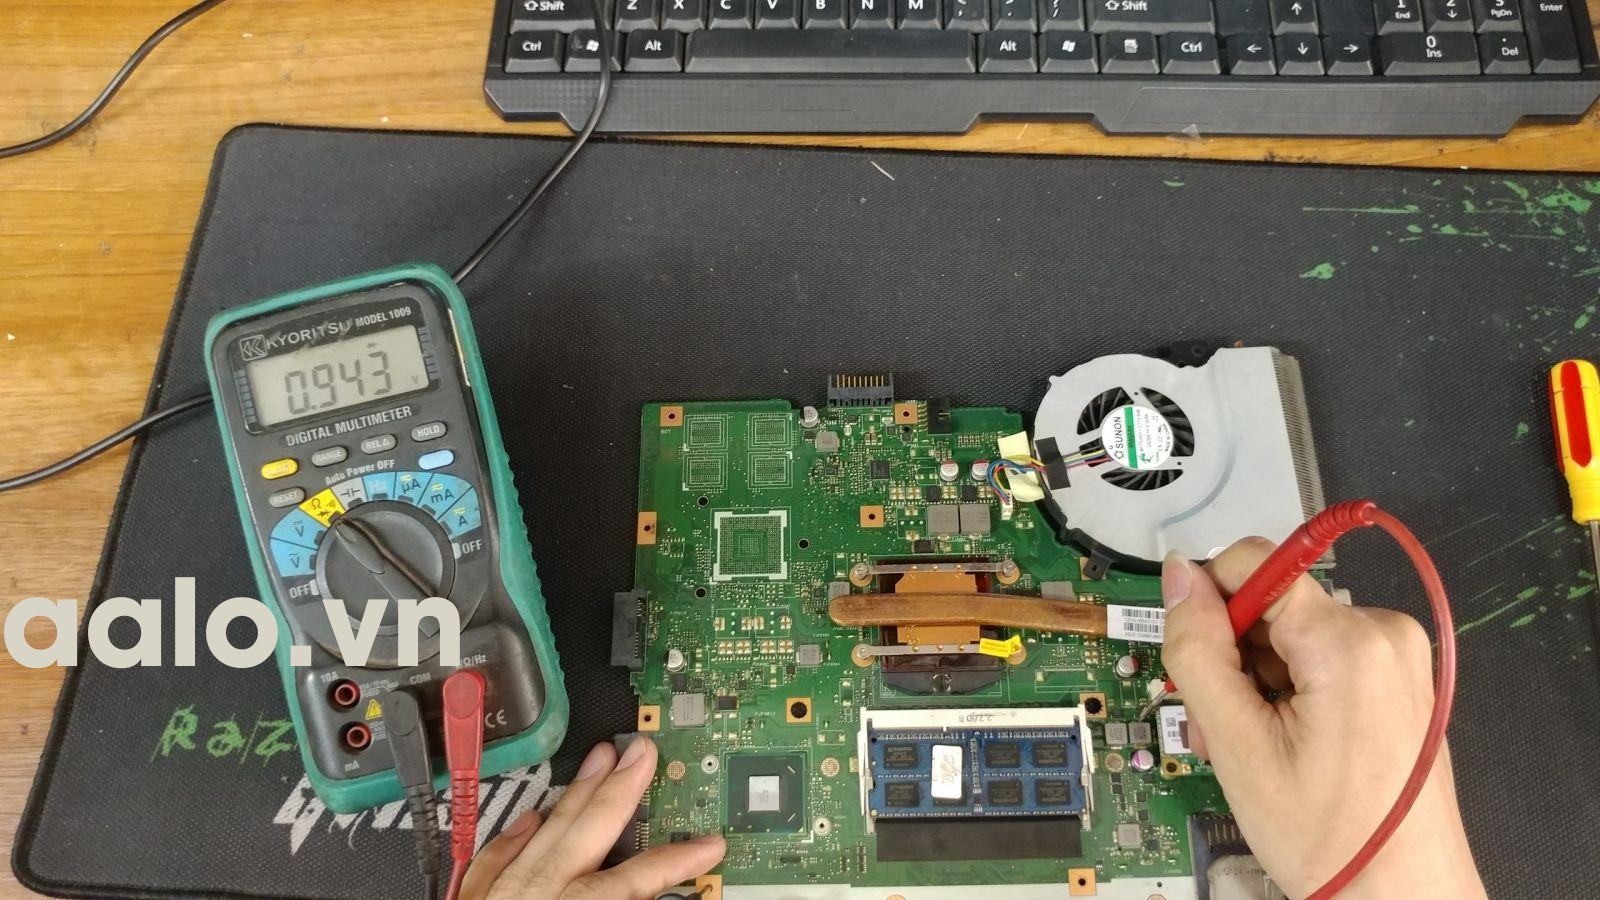 Sửa Laptop Asus K56 K46 4 cell mất nguồn-aalo.vn